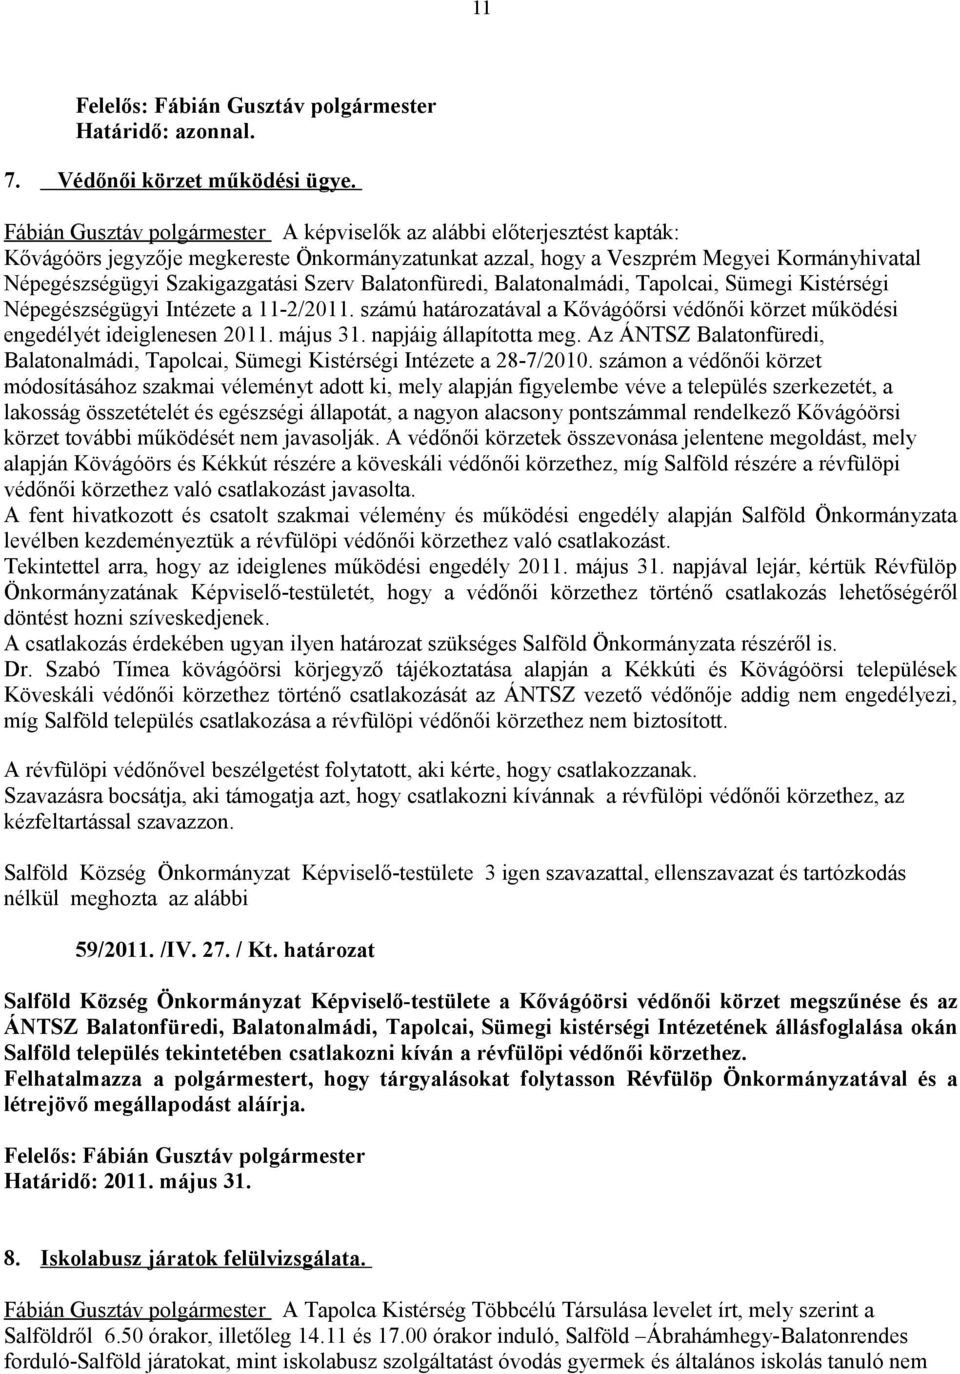 Szerv Balatonfüredi, Balatonalmádi, Tapolcai, Sümegi Kistérségi Népegészségügyi Intézete a 11-2/2011. számú határozatával a Kővágóőrsi védőnői körzet működési engedélyét ideiglenesen 2011. május 31.